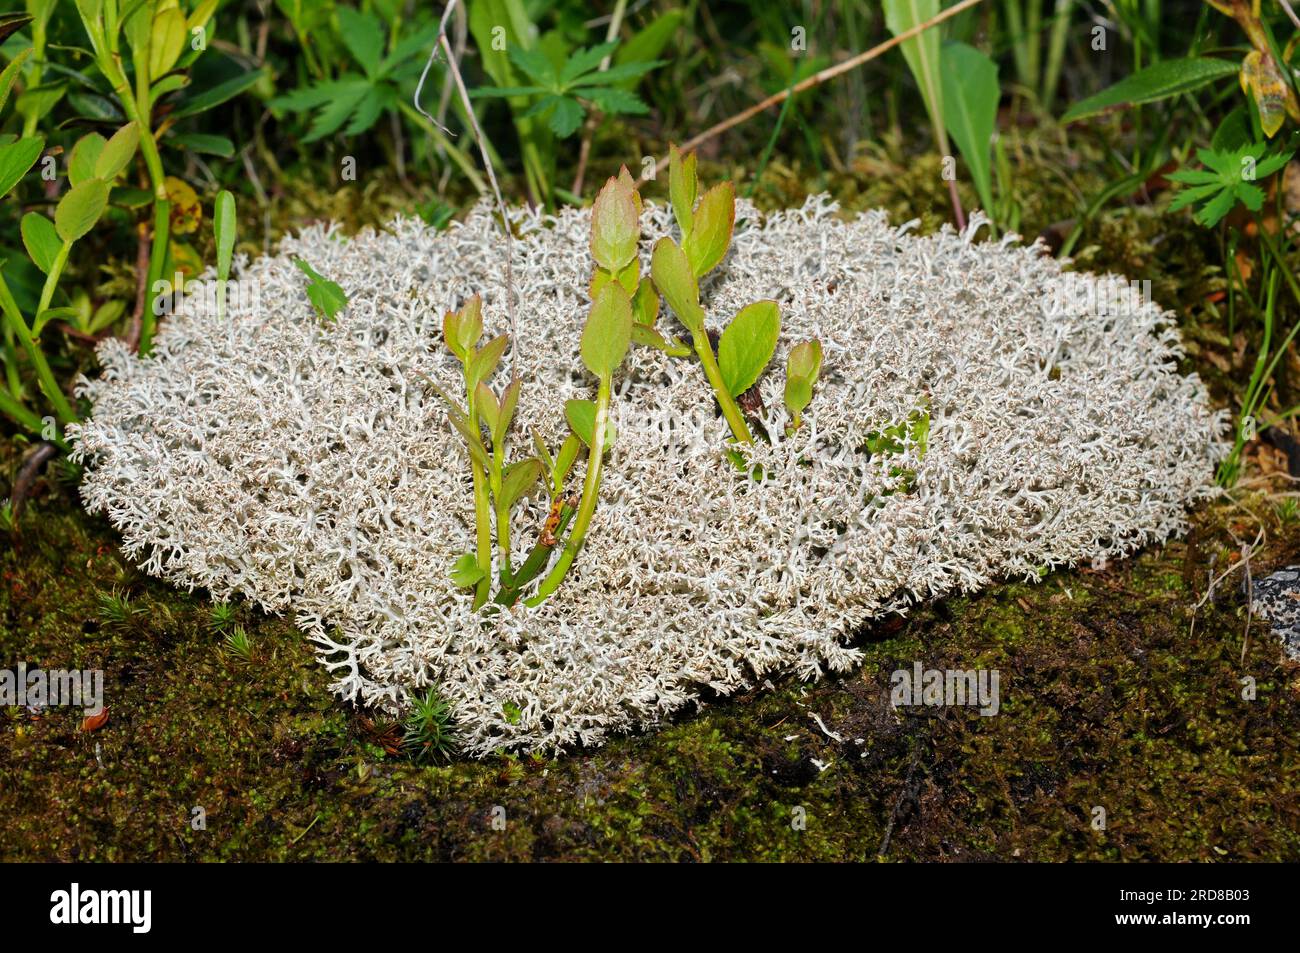 Il lichene delle renne o muschio caribou (Cladonia rangiferina) è un piede importante per le renne. Funghi. Ascomycota. Cladoniaceae. Questa foto è stata scattata in va Foto Stock